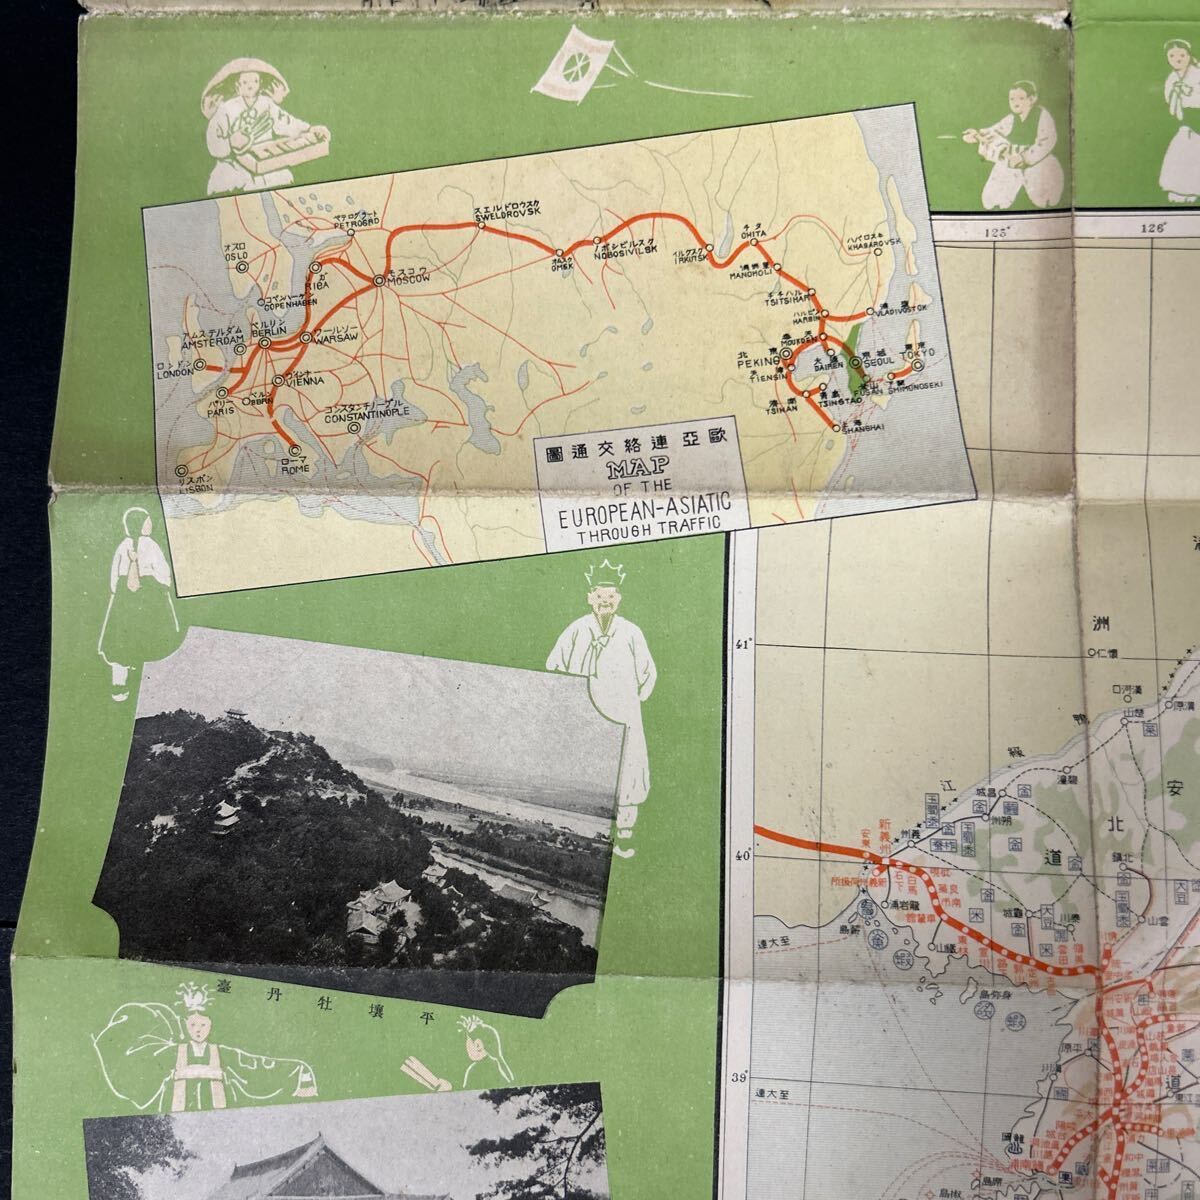 戦前 朝鮮 朝鮮旅行案内 小冊子 朝鮮総督府鉄道局 大判 朝鮮半島地図 写真多数 鉄道路線 韓国、満州の画像6